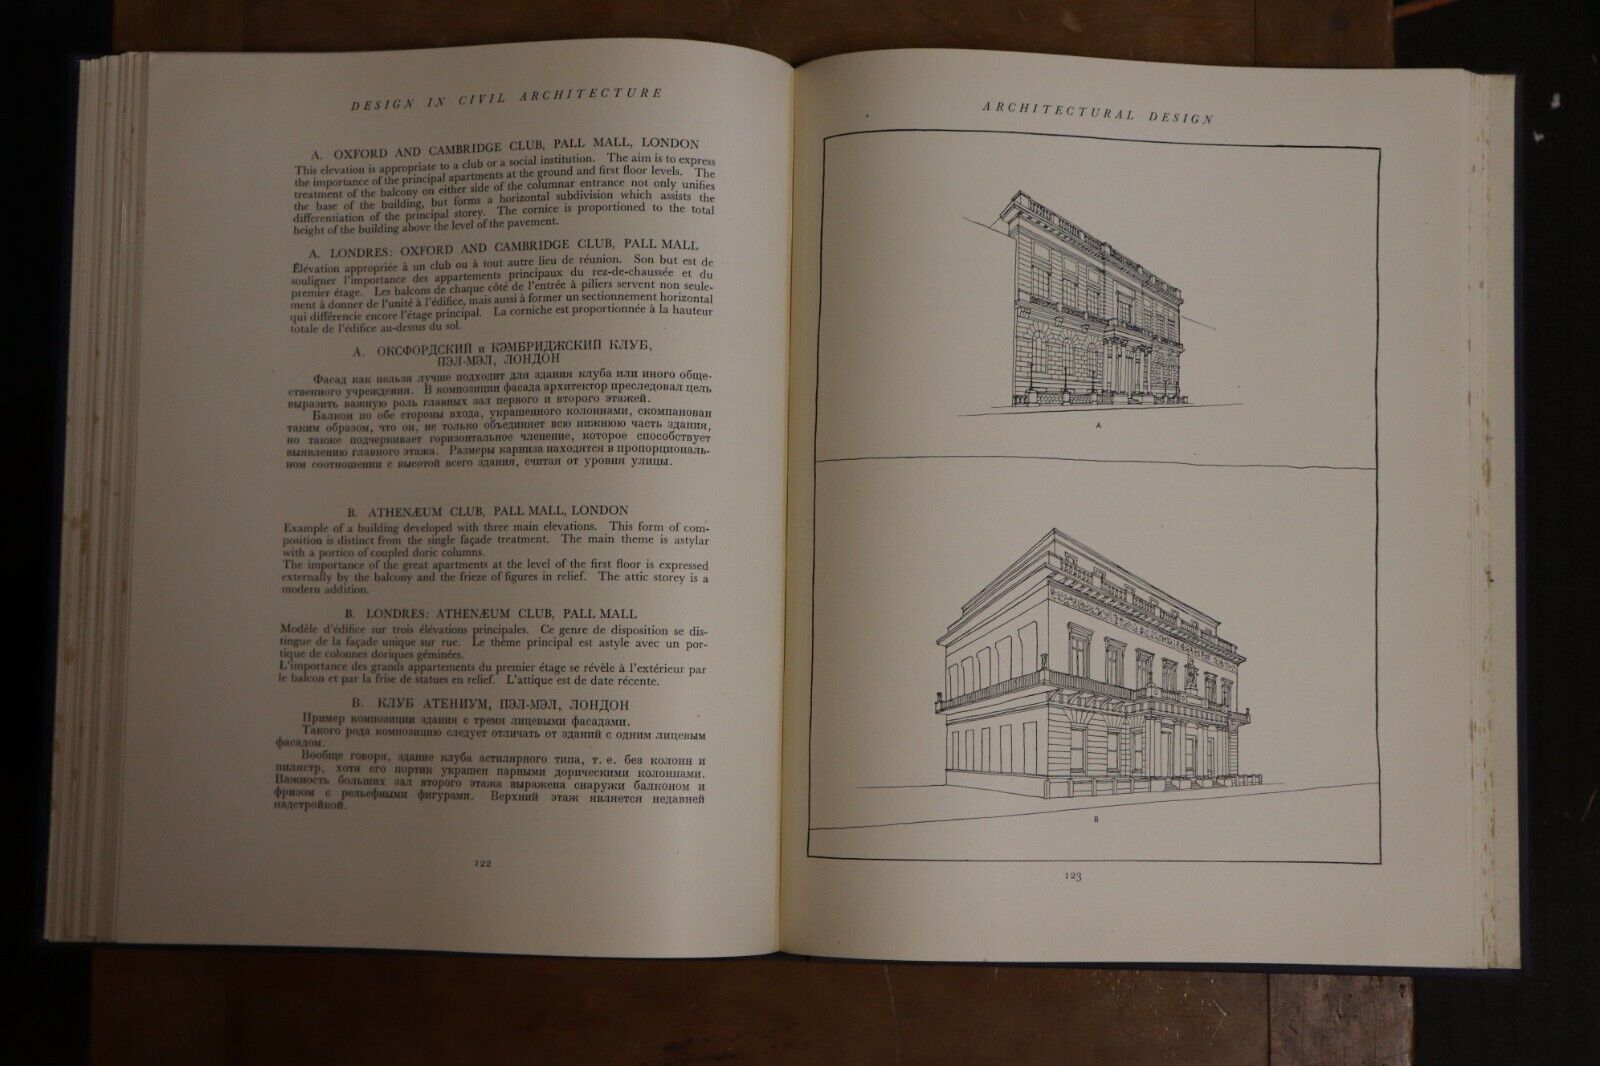 Design In Civil Architecture - 1948 - 1st Edition - Antique Architecture Book